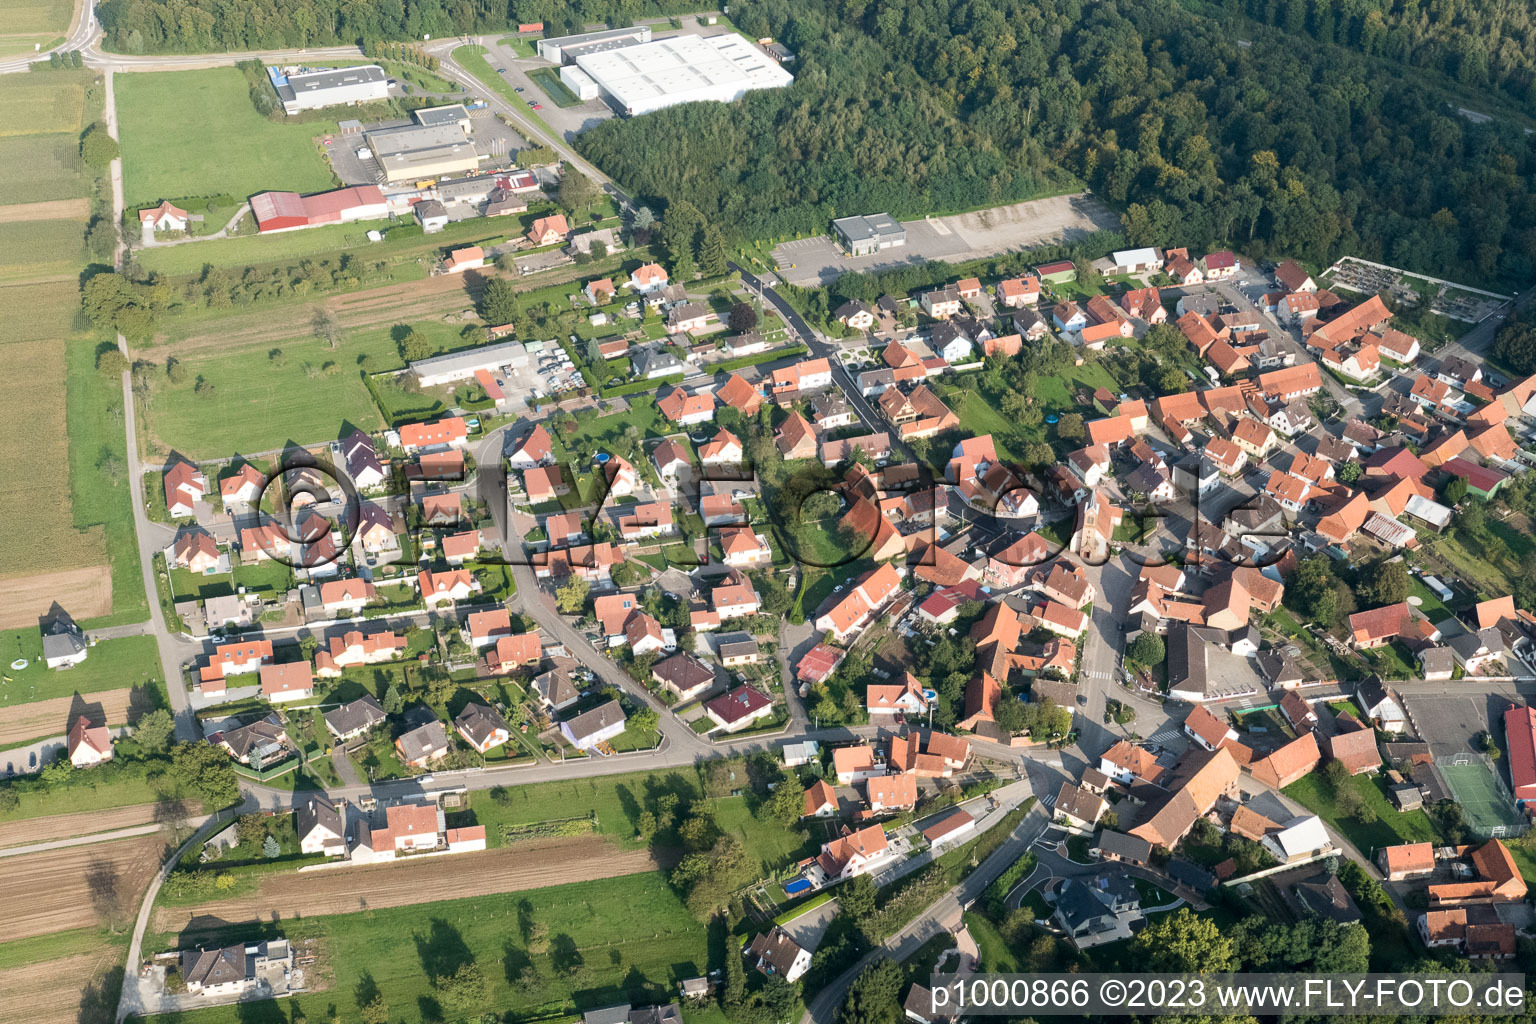 Schaffhouse-près-Seltz im Bundesland Bas-Rhin, Frankreich aus der Luft betrachtet